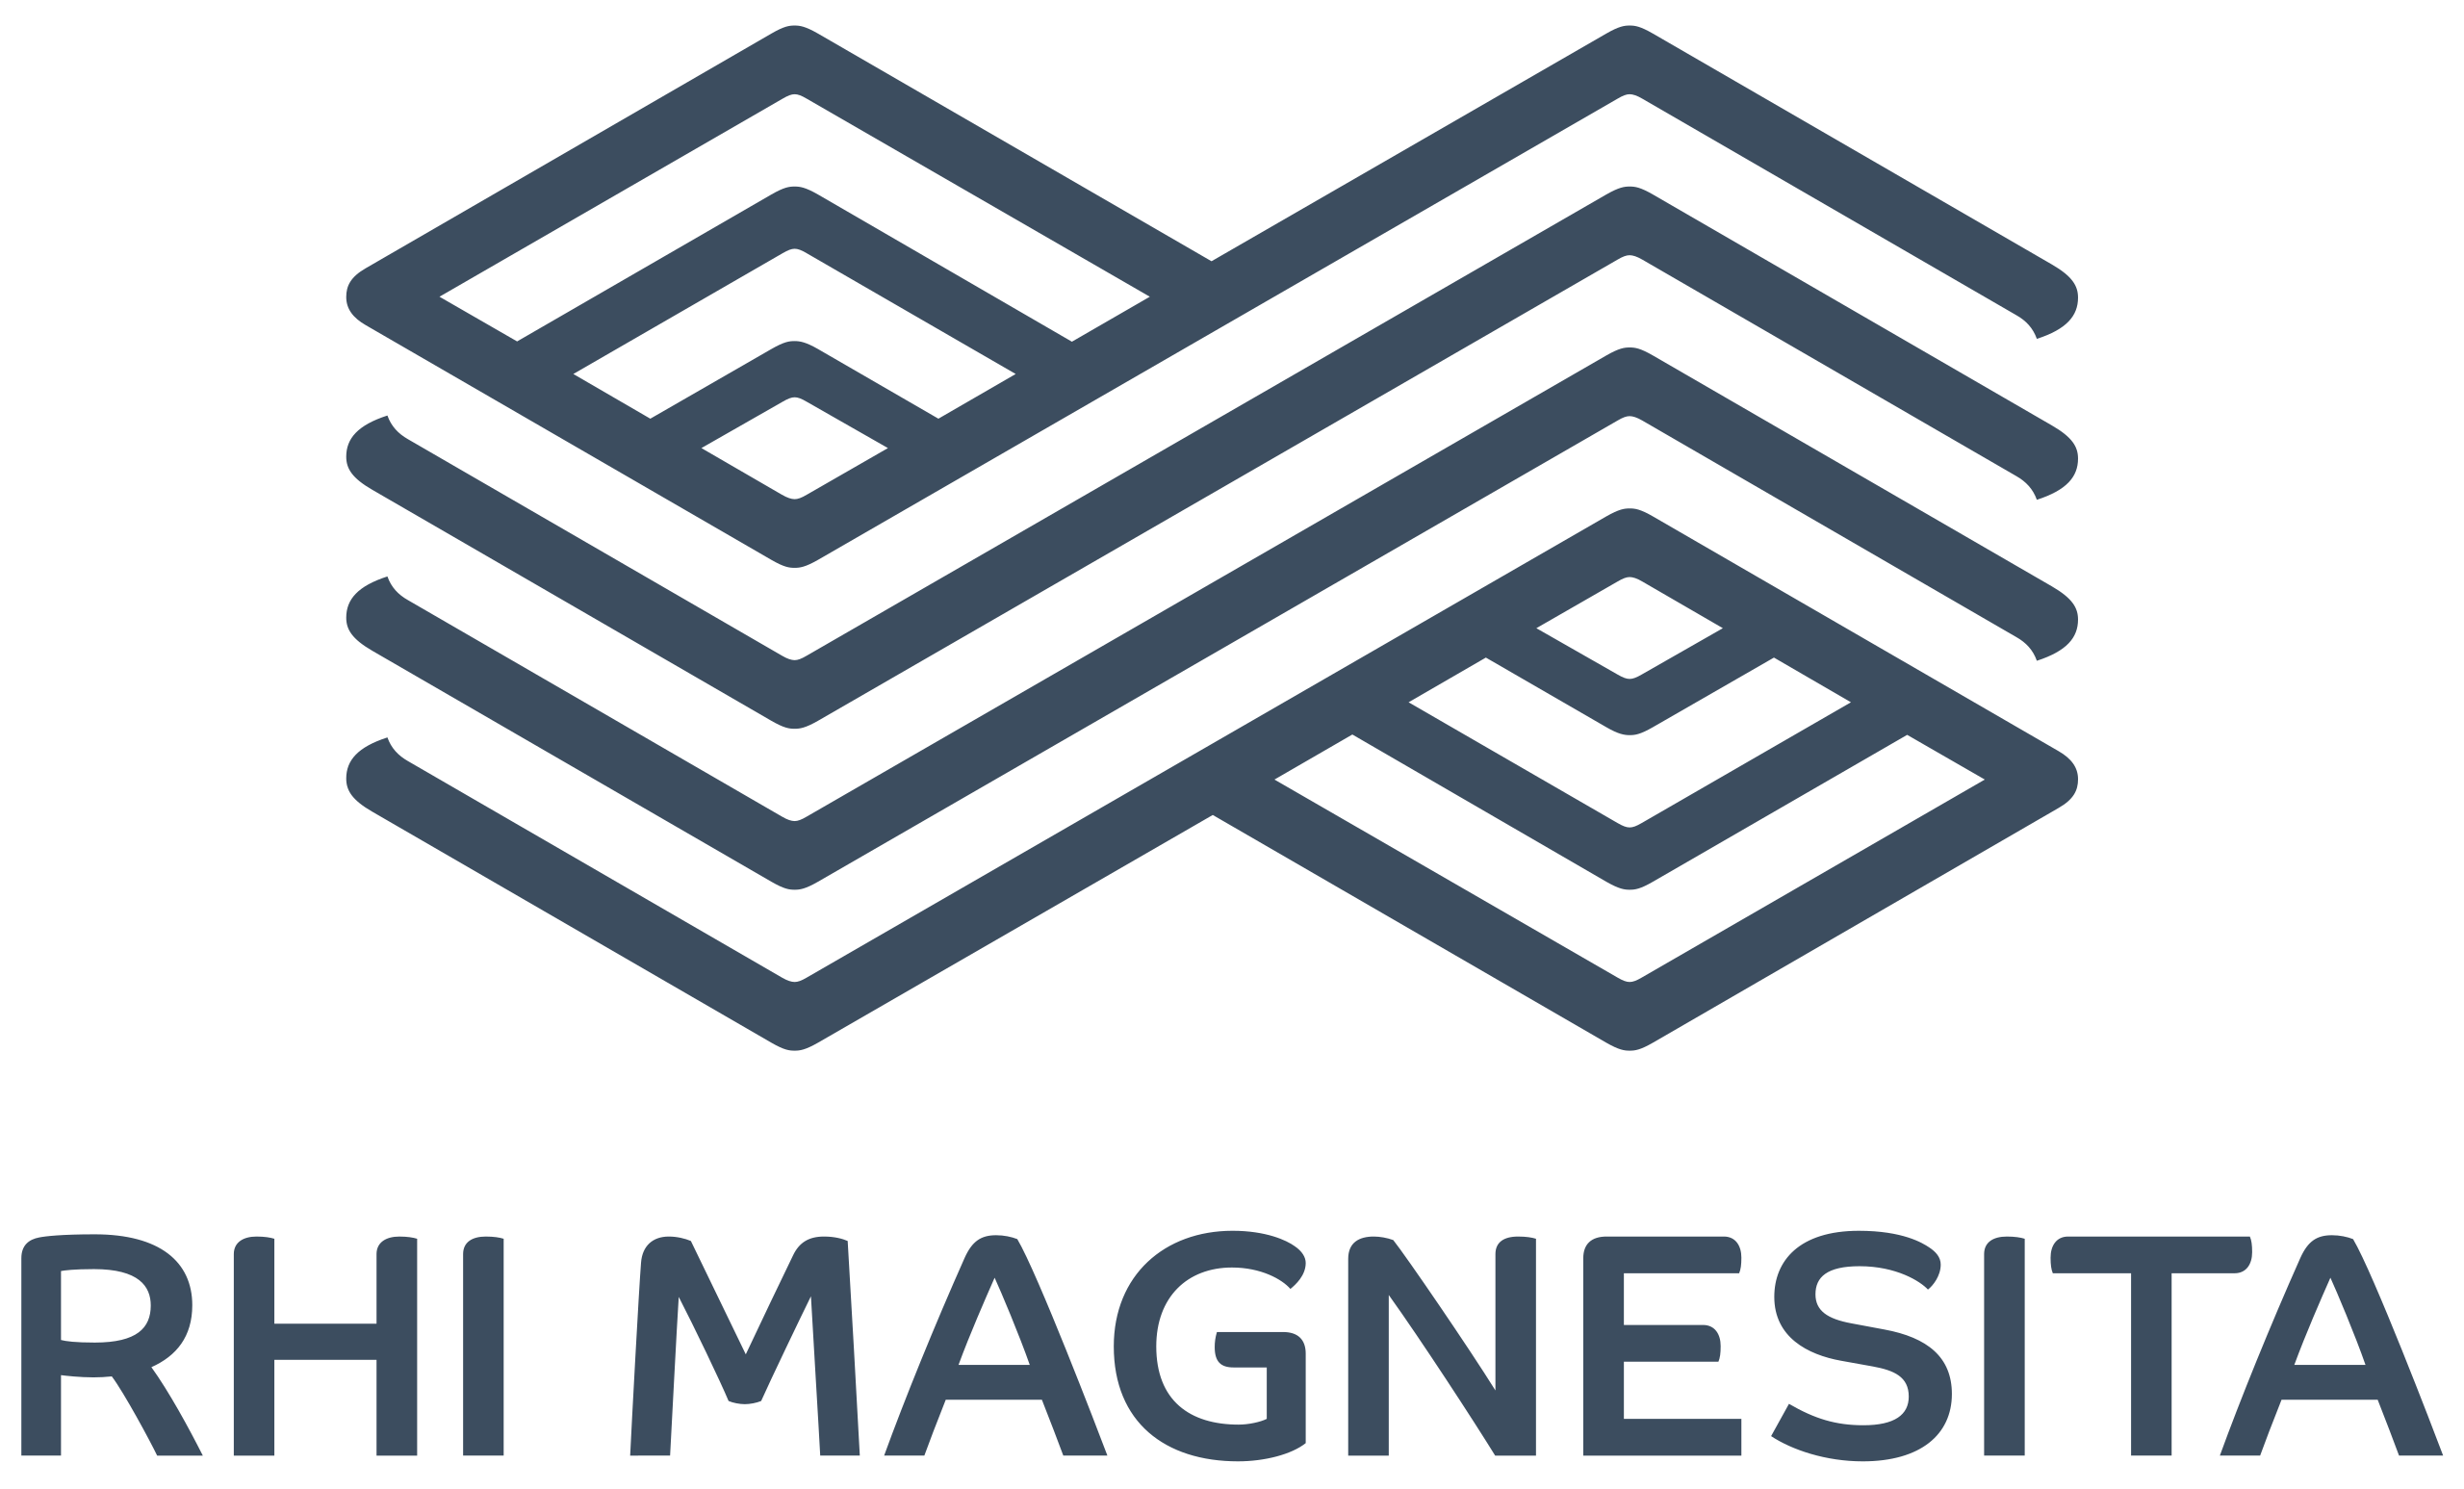 RHI_Magnesita_logo.svg